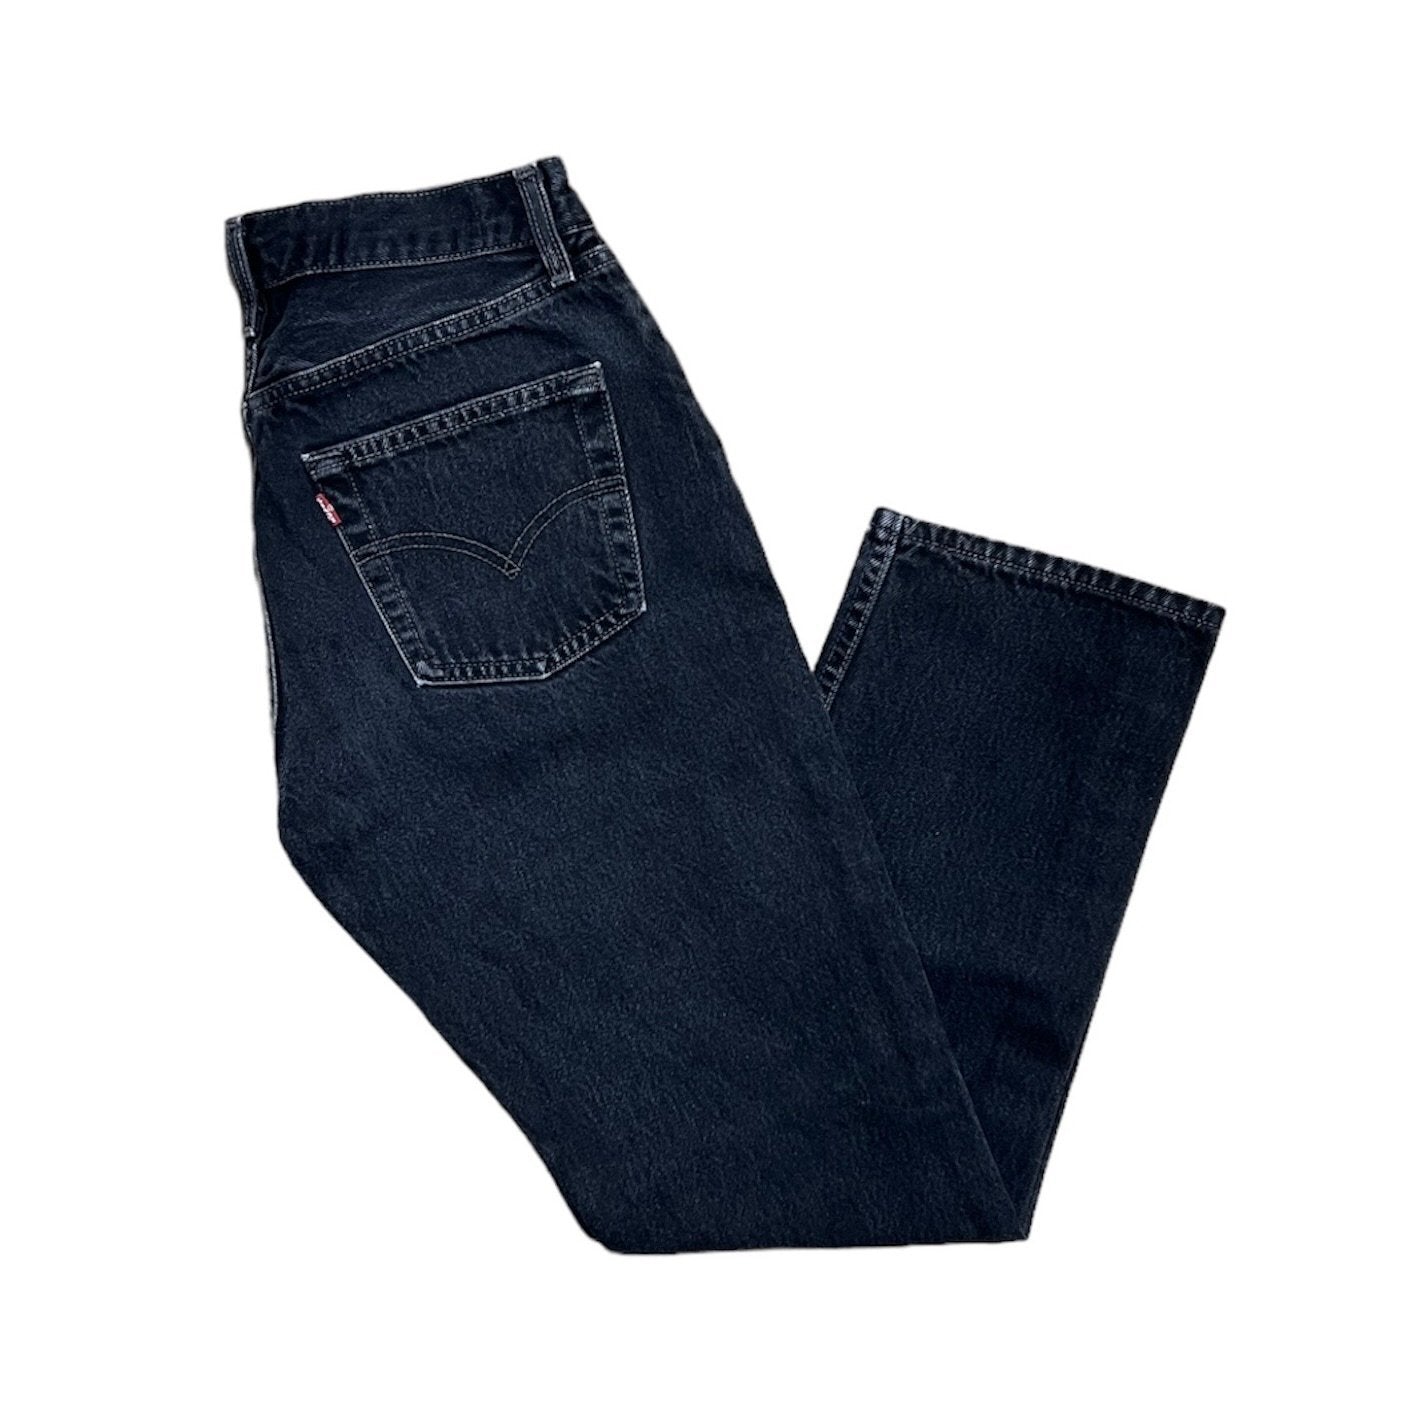 Vintage Levis Black Jeans (W27/L28)